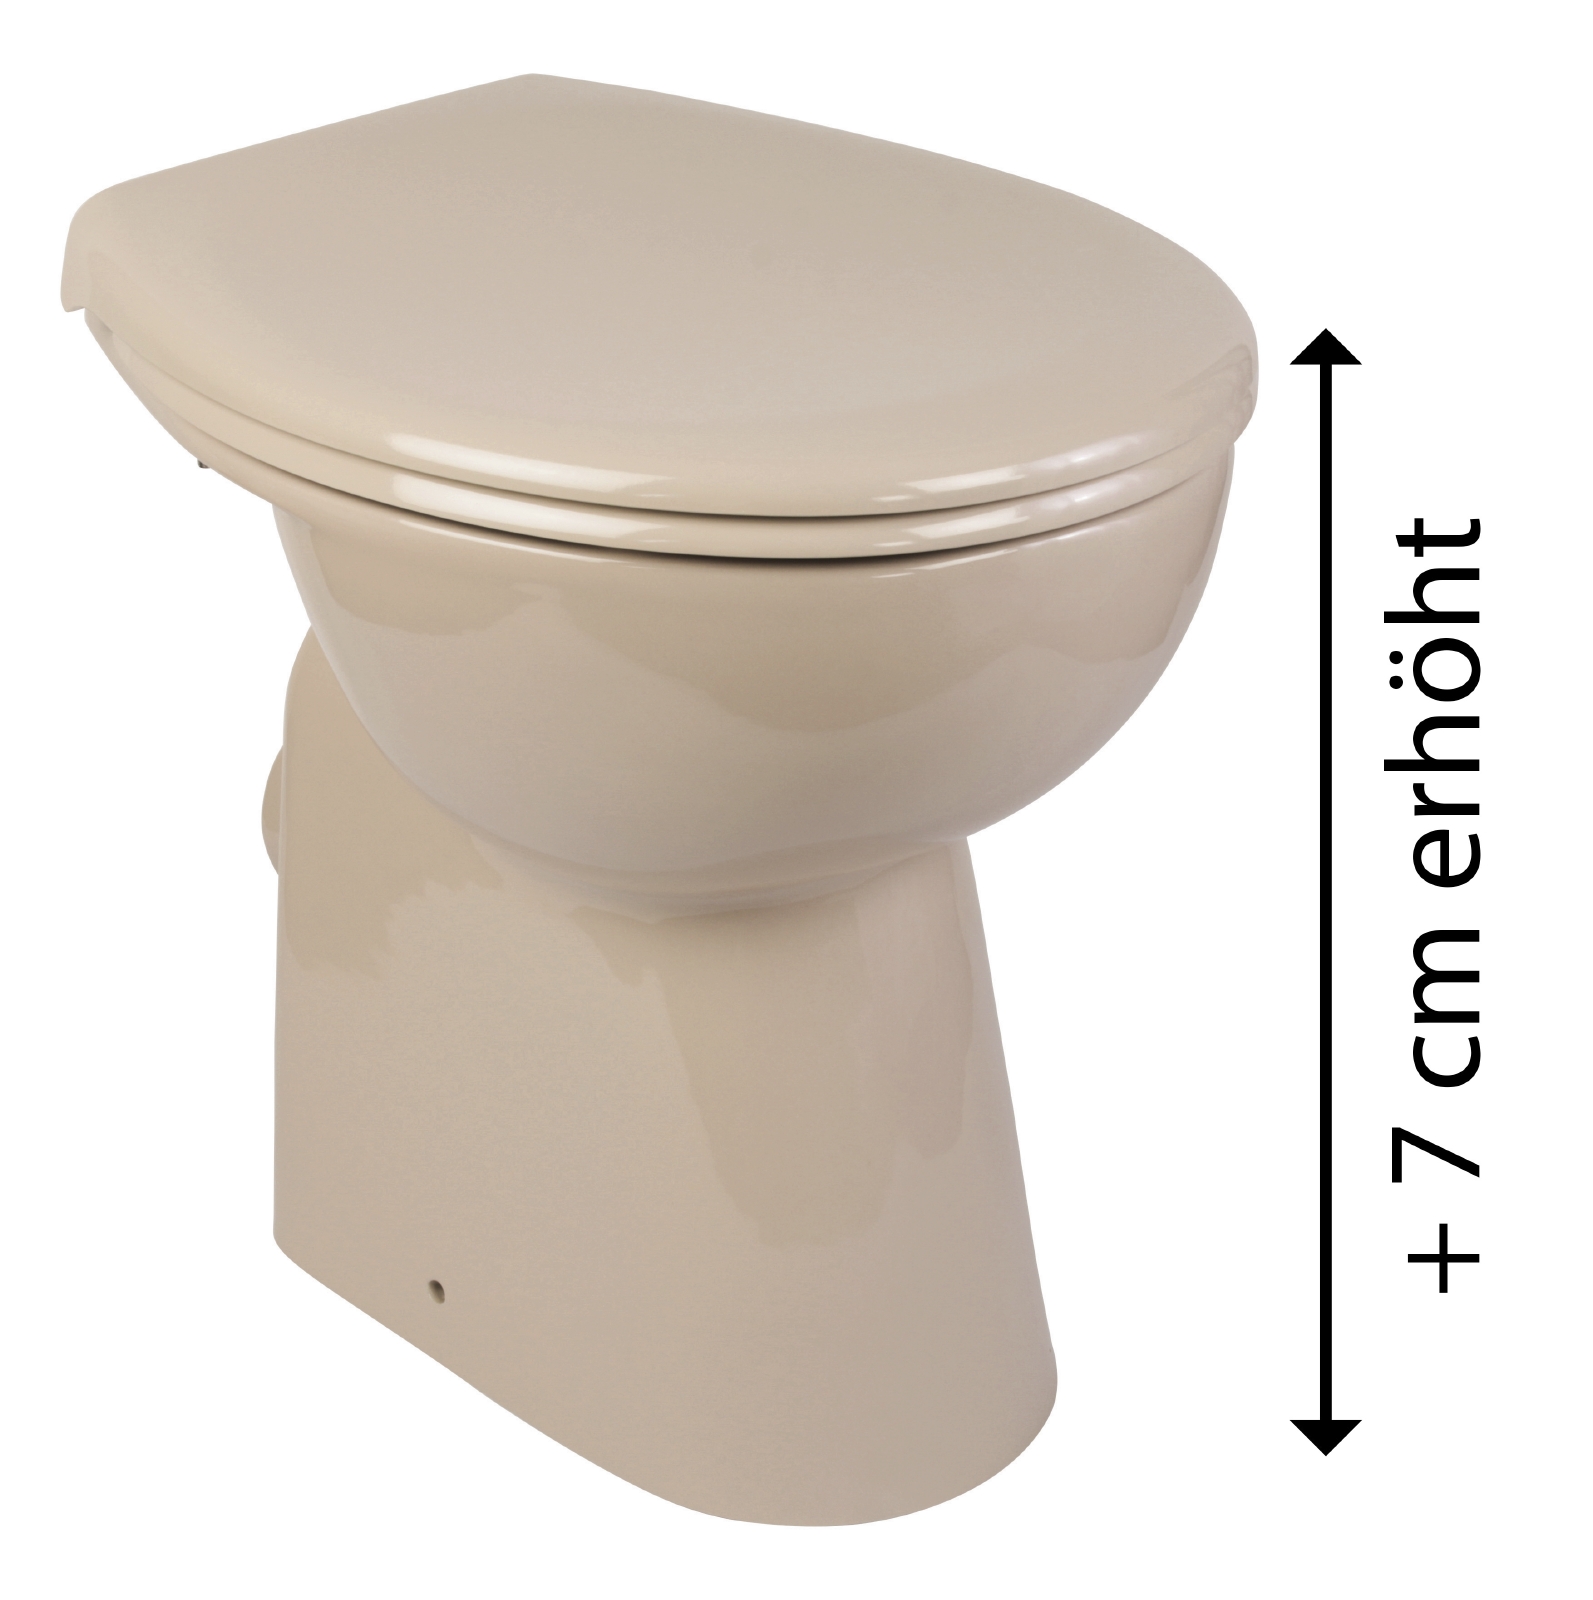 Erhöhtes Stand-WC Elements Wellness in Beige, spülrandlos mit Erhöhung +7 cm, Tiefspüler mit WC-Sitz